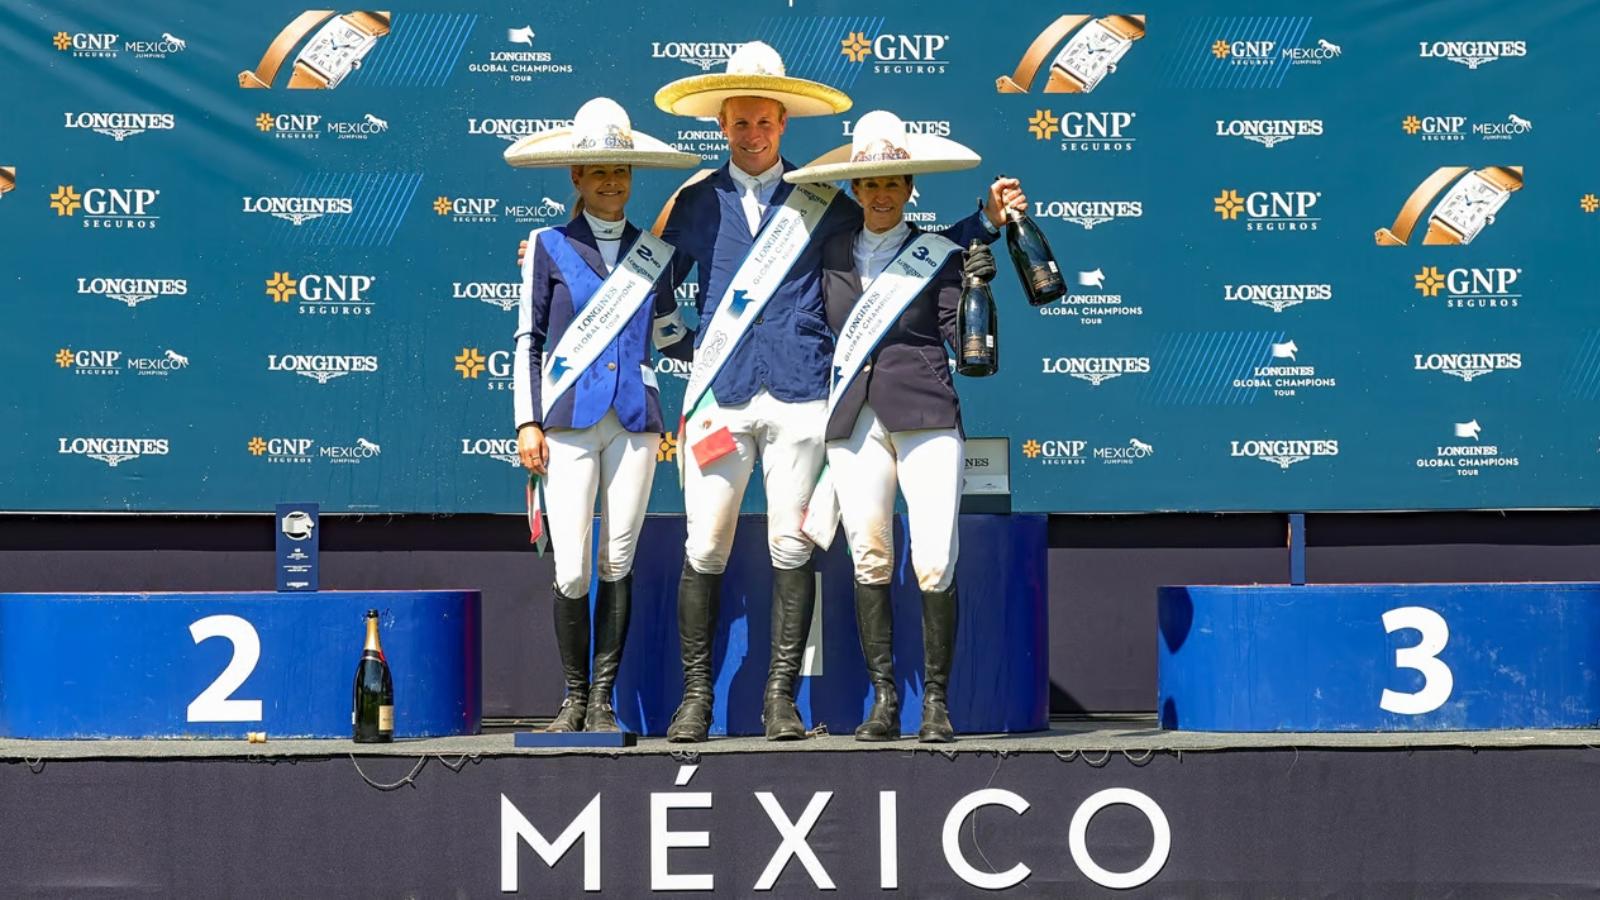 Le podium de la troisième étape de la saison du Longines Global Champions Tour, à Mexico